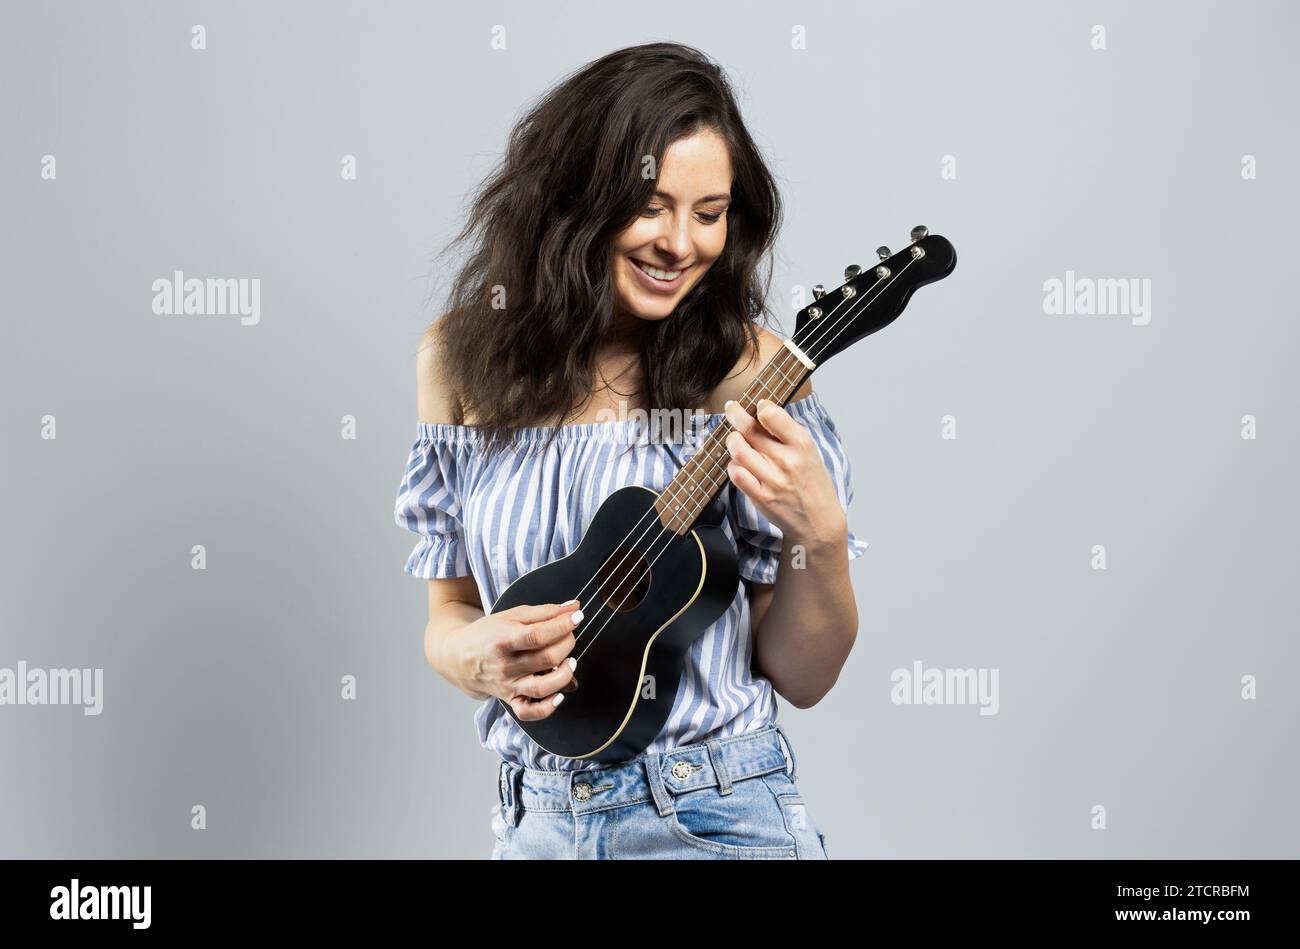 Attraente donna bruna che gioca a ukulele, isolata su sfondo grigio Foto Stock